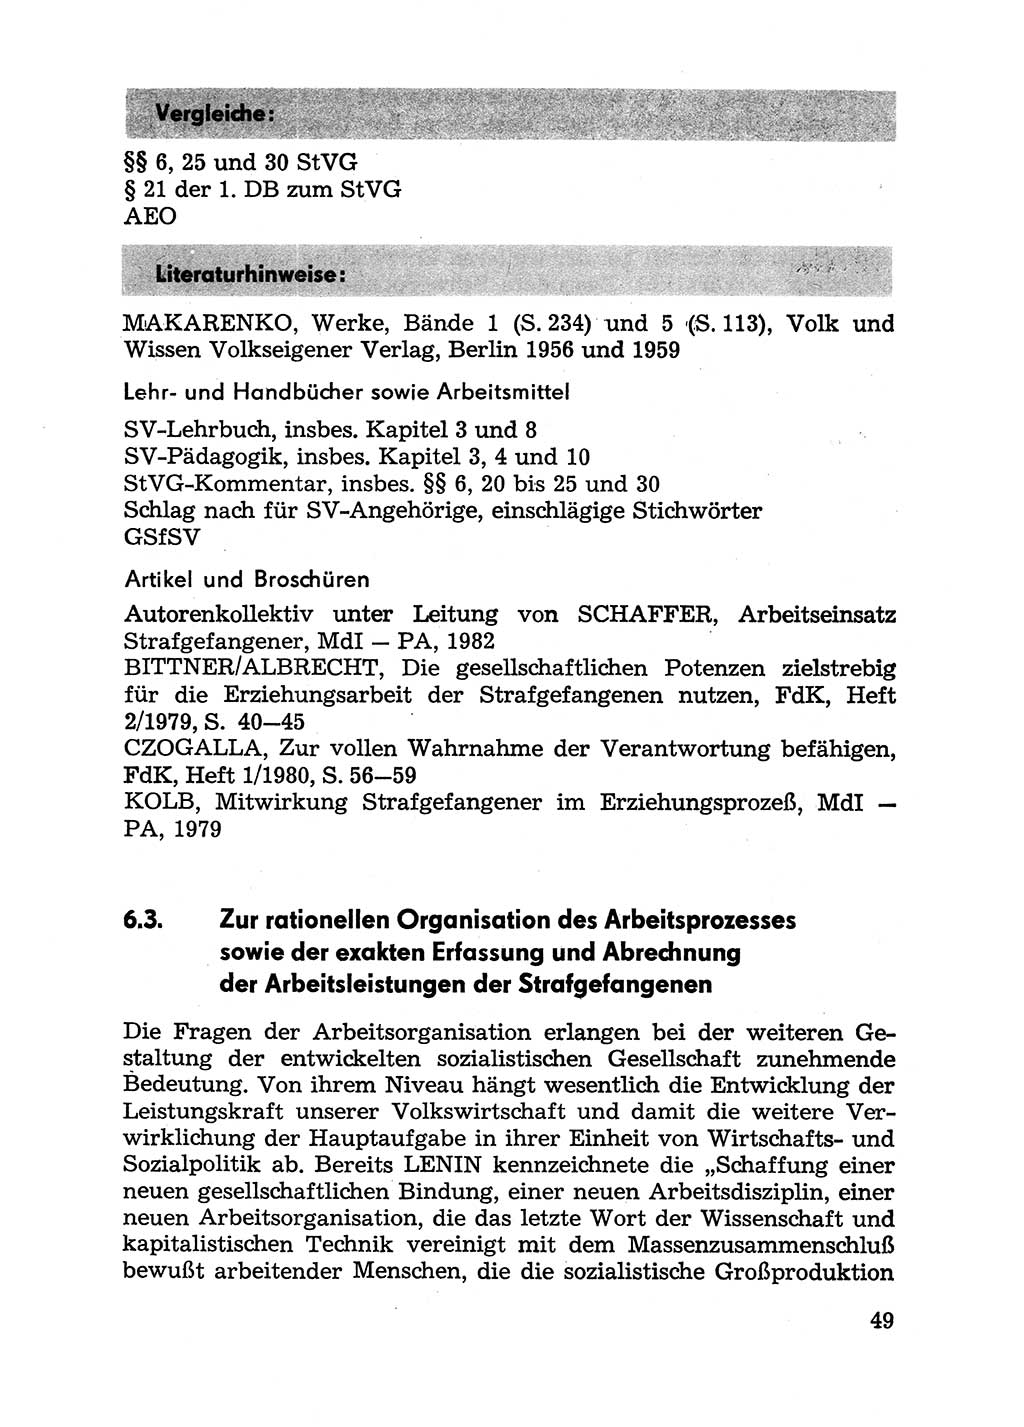 Handbuch für Betriebsangehörige, Abteilung Strafvollzug (SV) [Ministerium des Innern (MdI) Deutsche Demokratische Republik (DDR)] 1981, Seite 49 (Hb. BA Abt. SV MdI DDR 1981, S. 49)